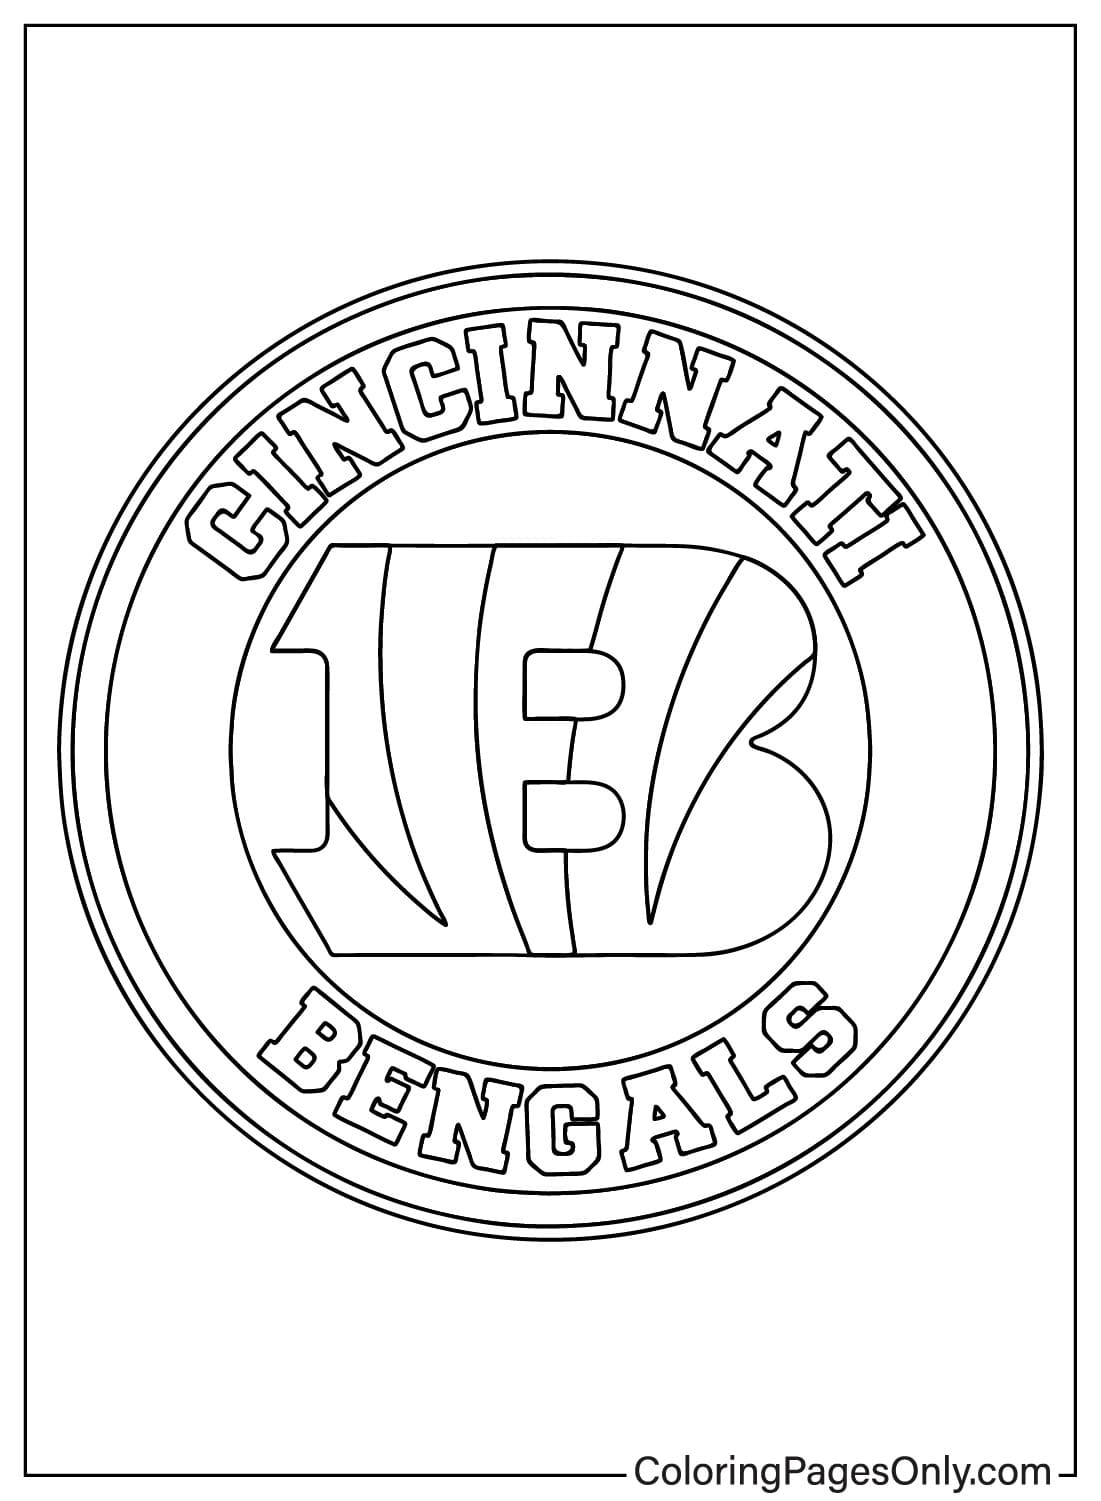 Drucken Sie die Malvorlage „Cincinnati Bengals“ von den Cincinnati Bengals aus